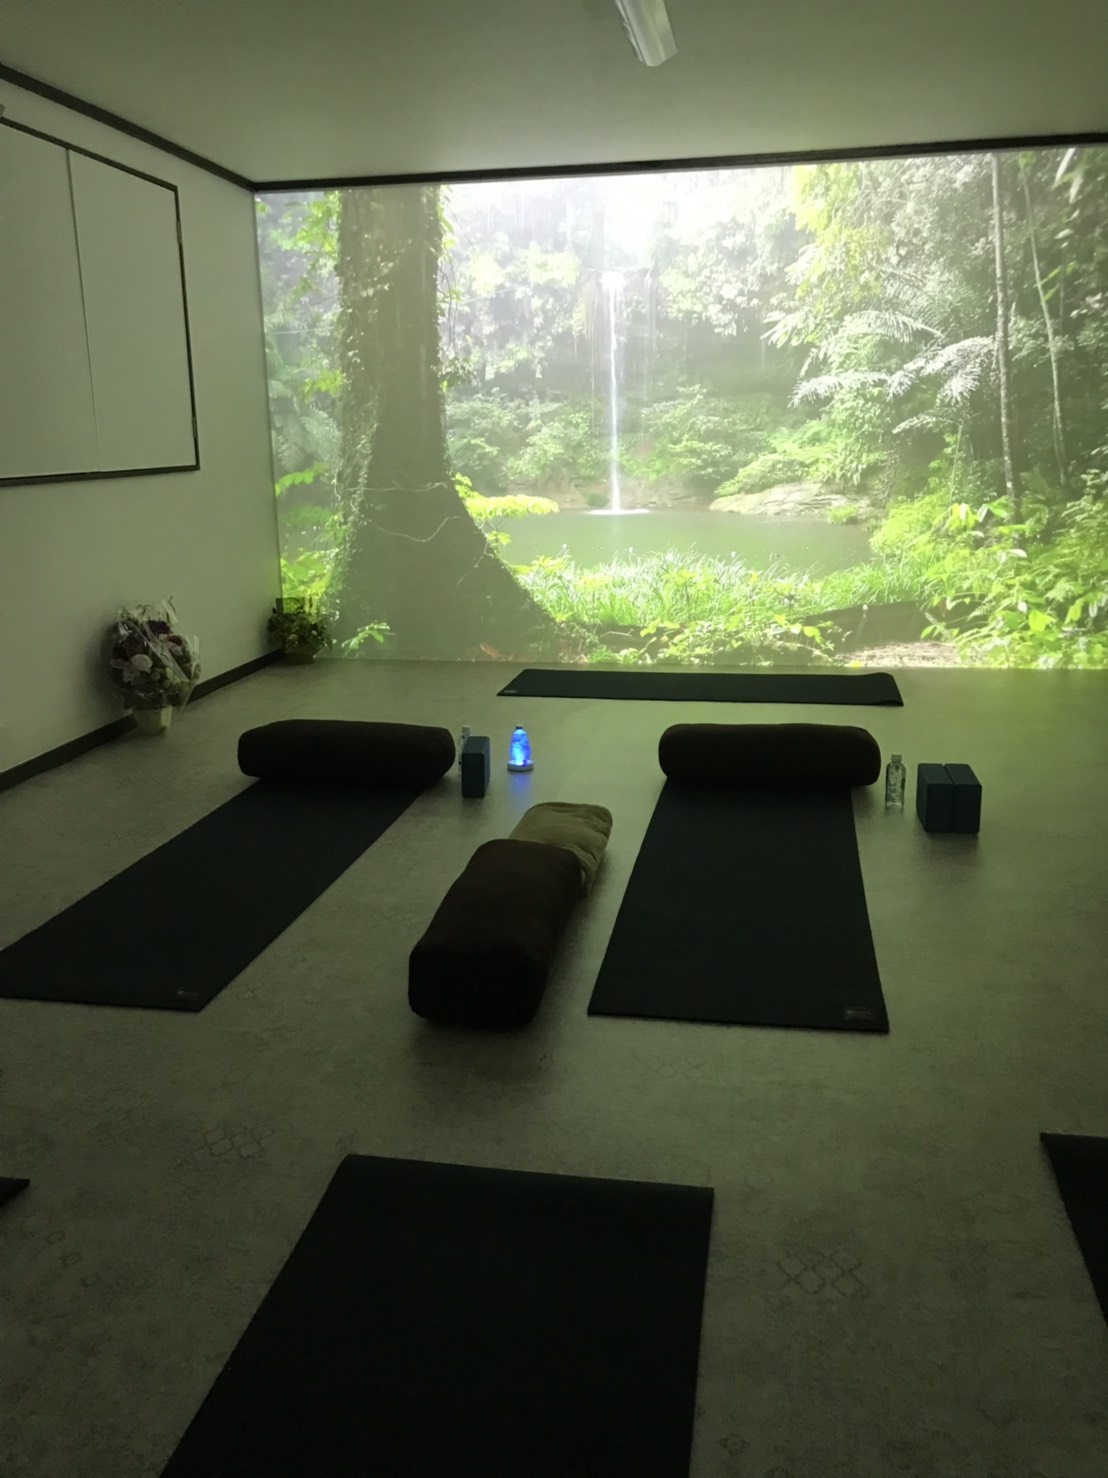 My-Yoga Studio（マイヨガスタジオ）